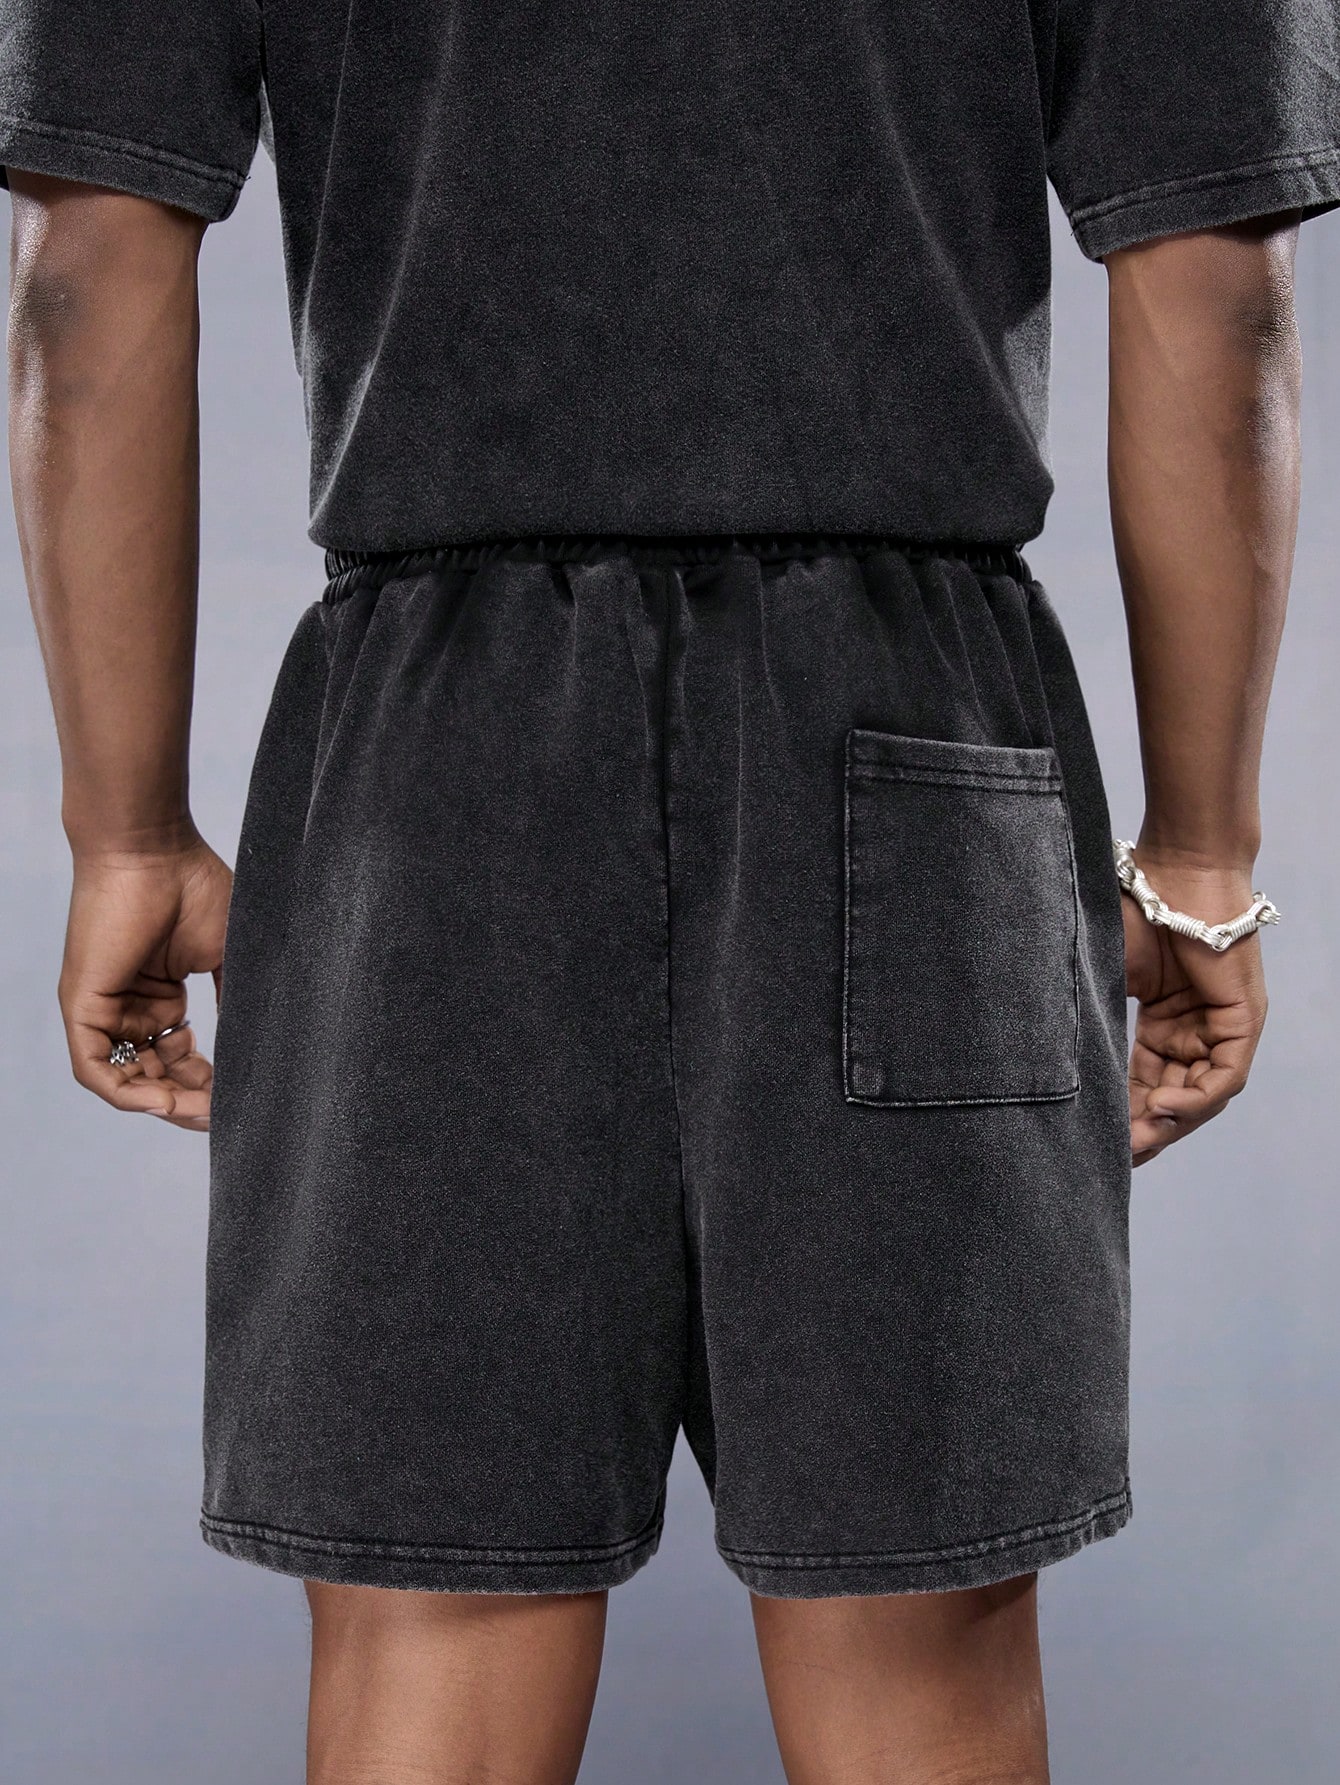 Manfinity StreetEZ Мужские однотонные трикотажные повседневные шорты с эластичной резинкой на талии, темно-серый